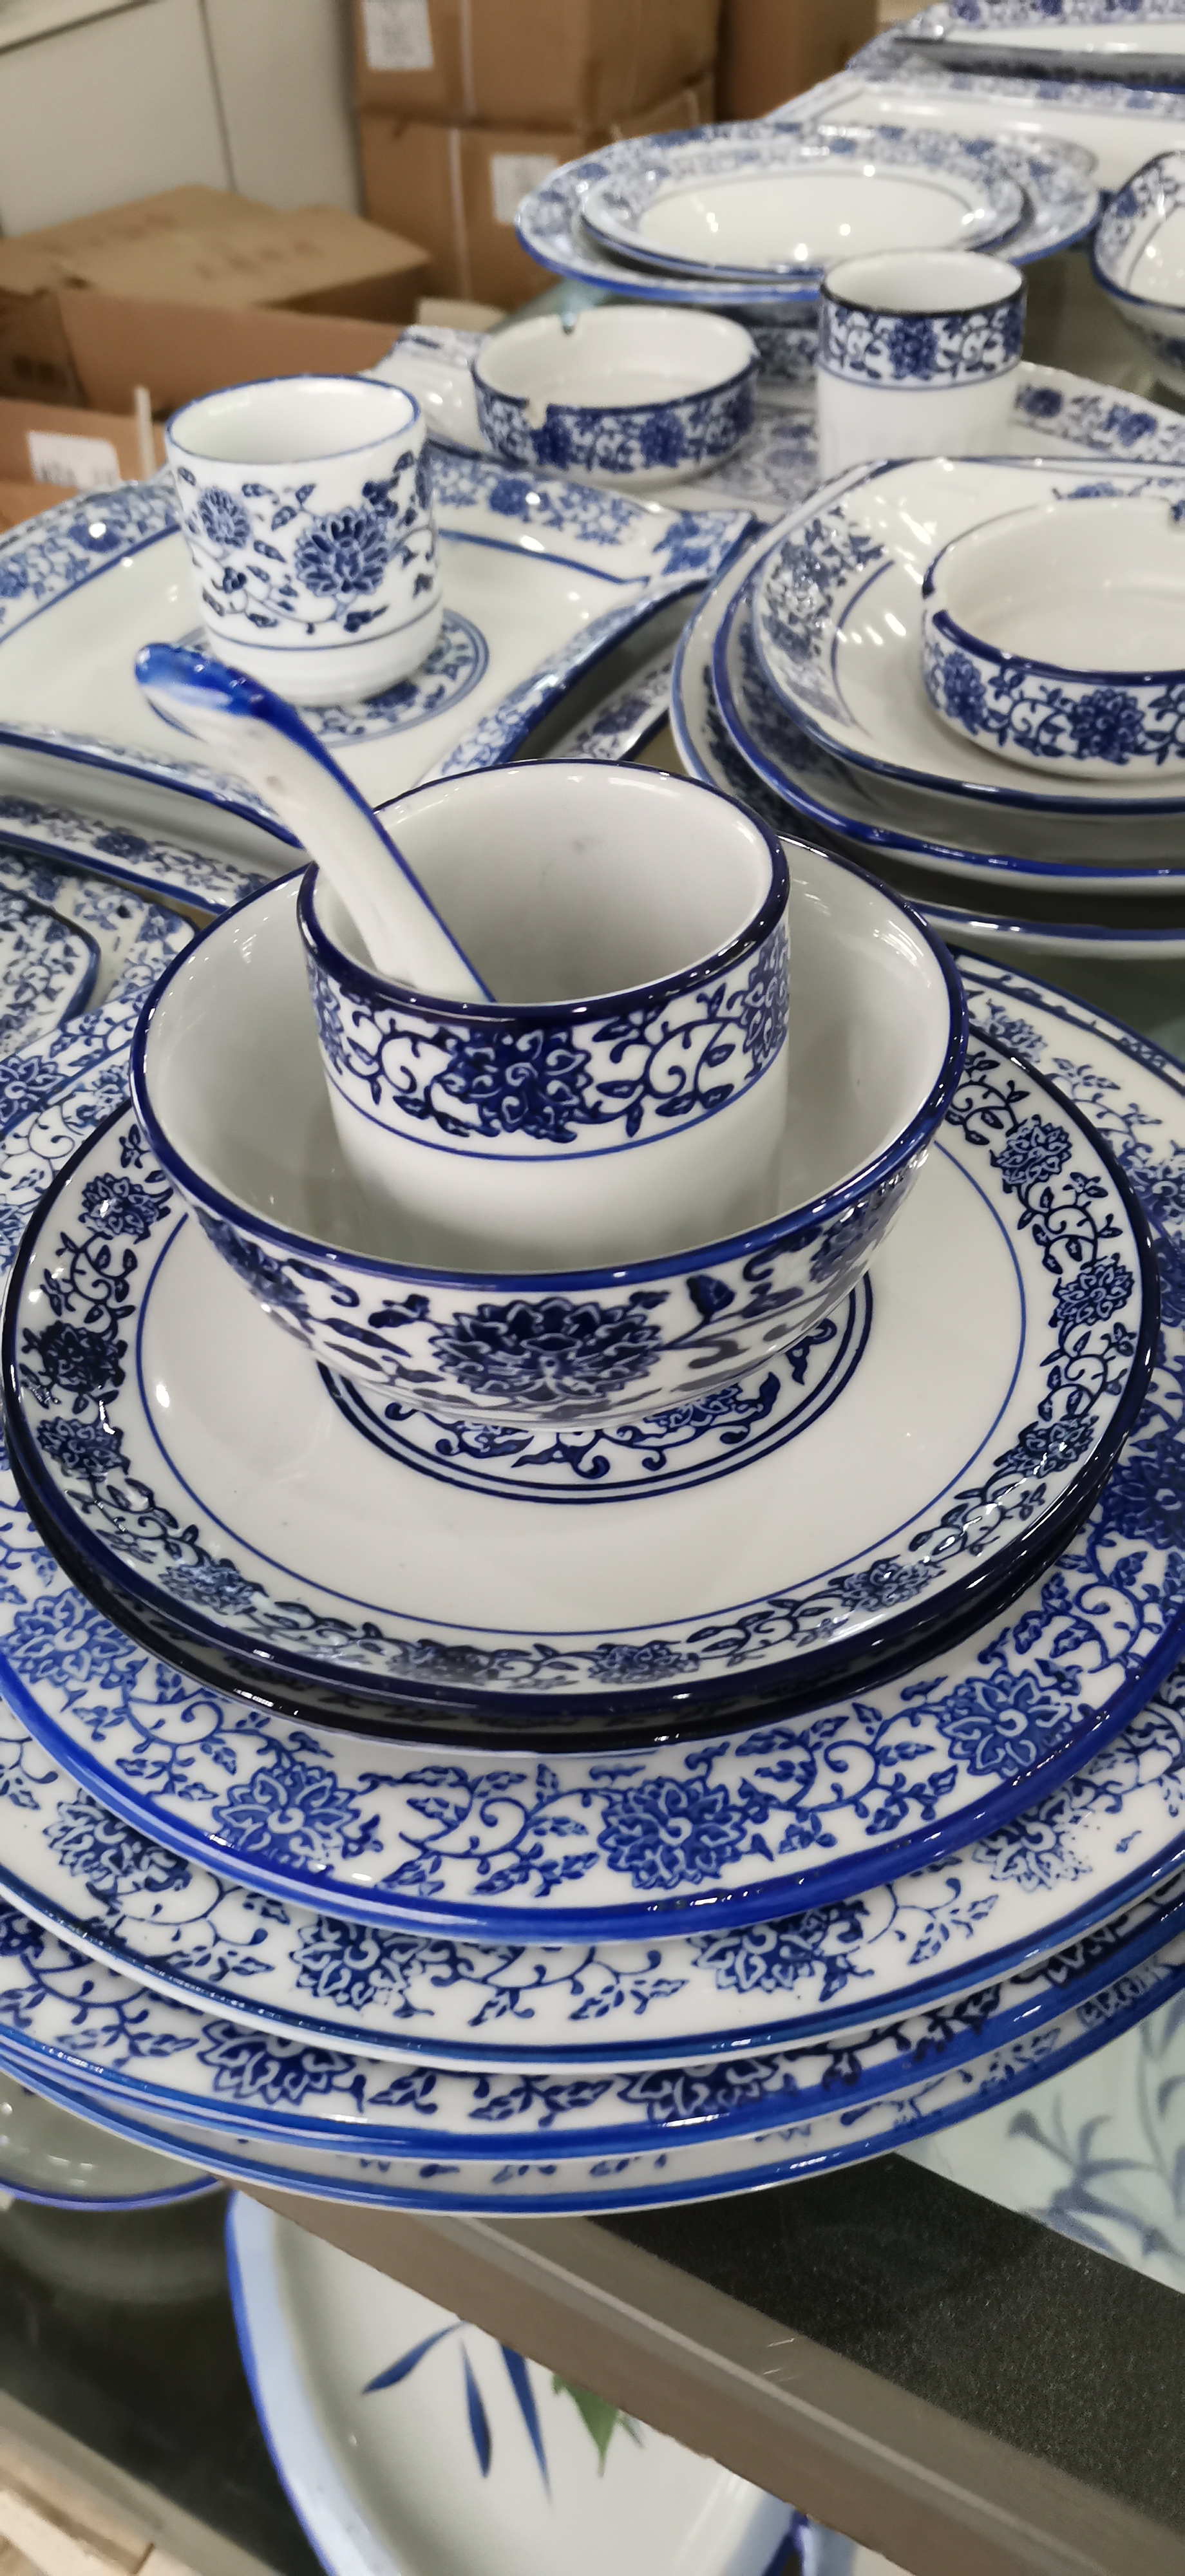 中国风青花瓷四件套礼品 亮丽陶瓷家用碗盘碟套装礼品瓷生产商供应